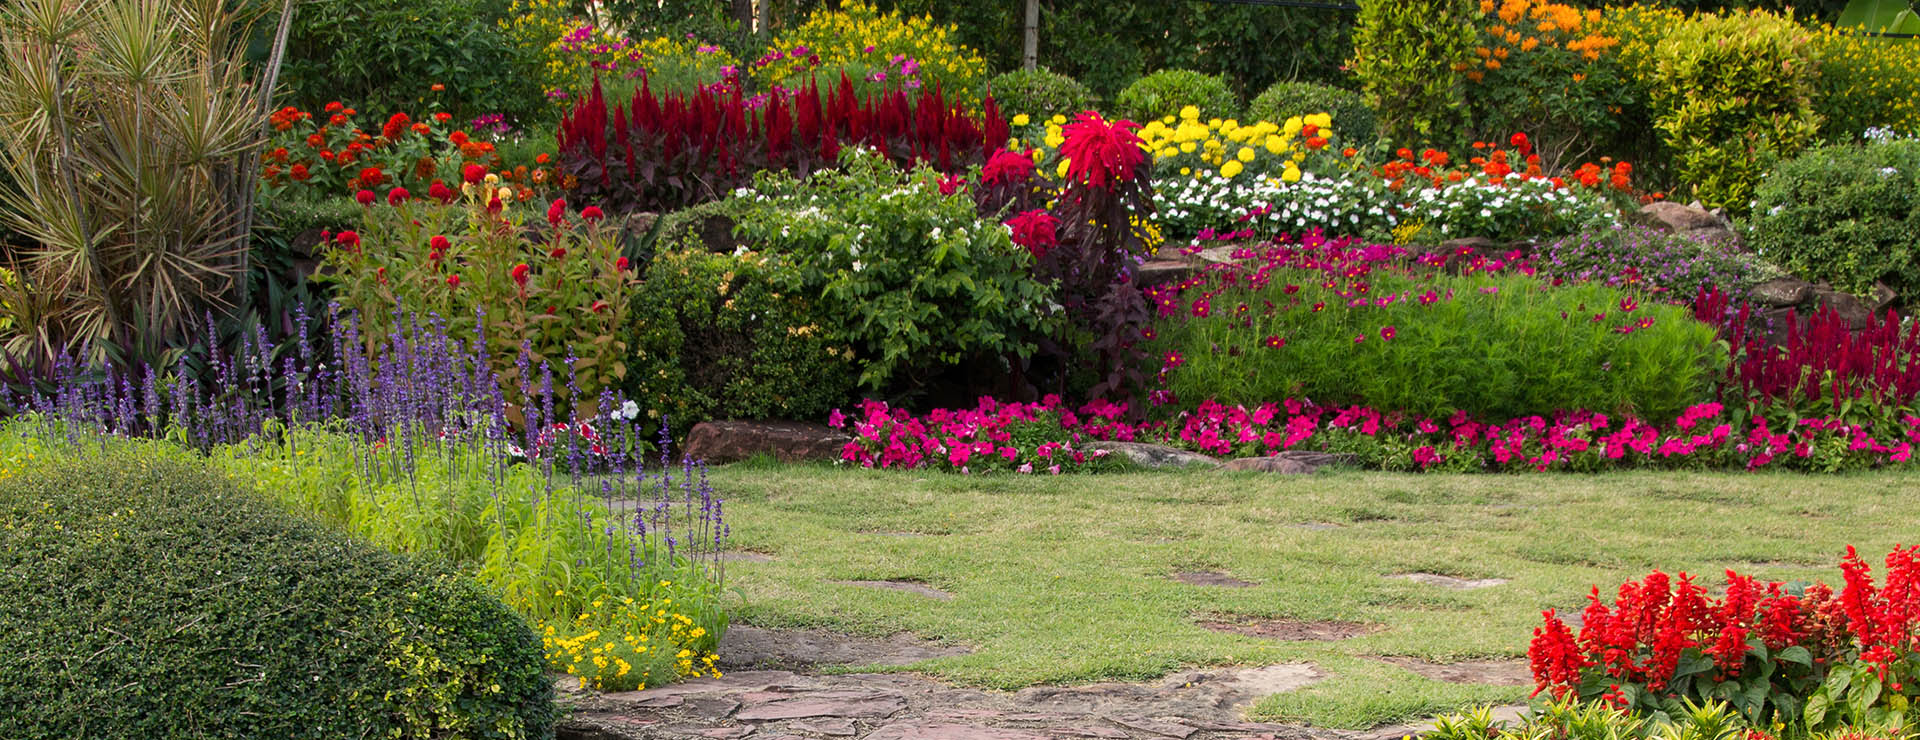 κήπος με πέτρινα σκαλοπάτια και χρωματιστά λουλούδια